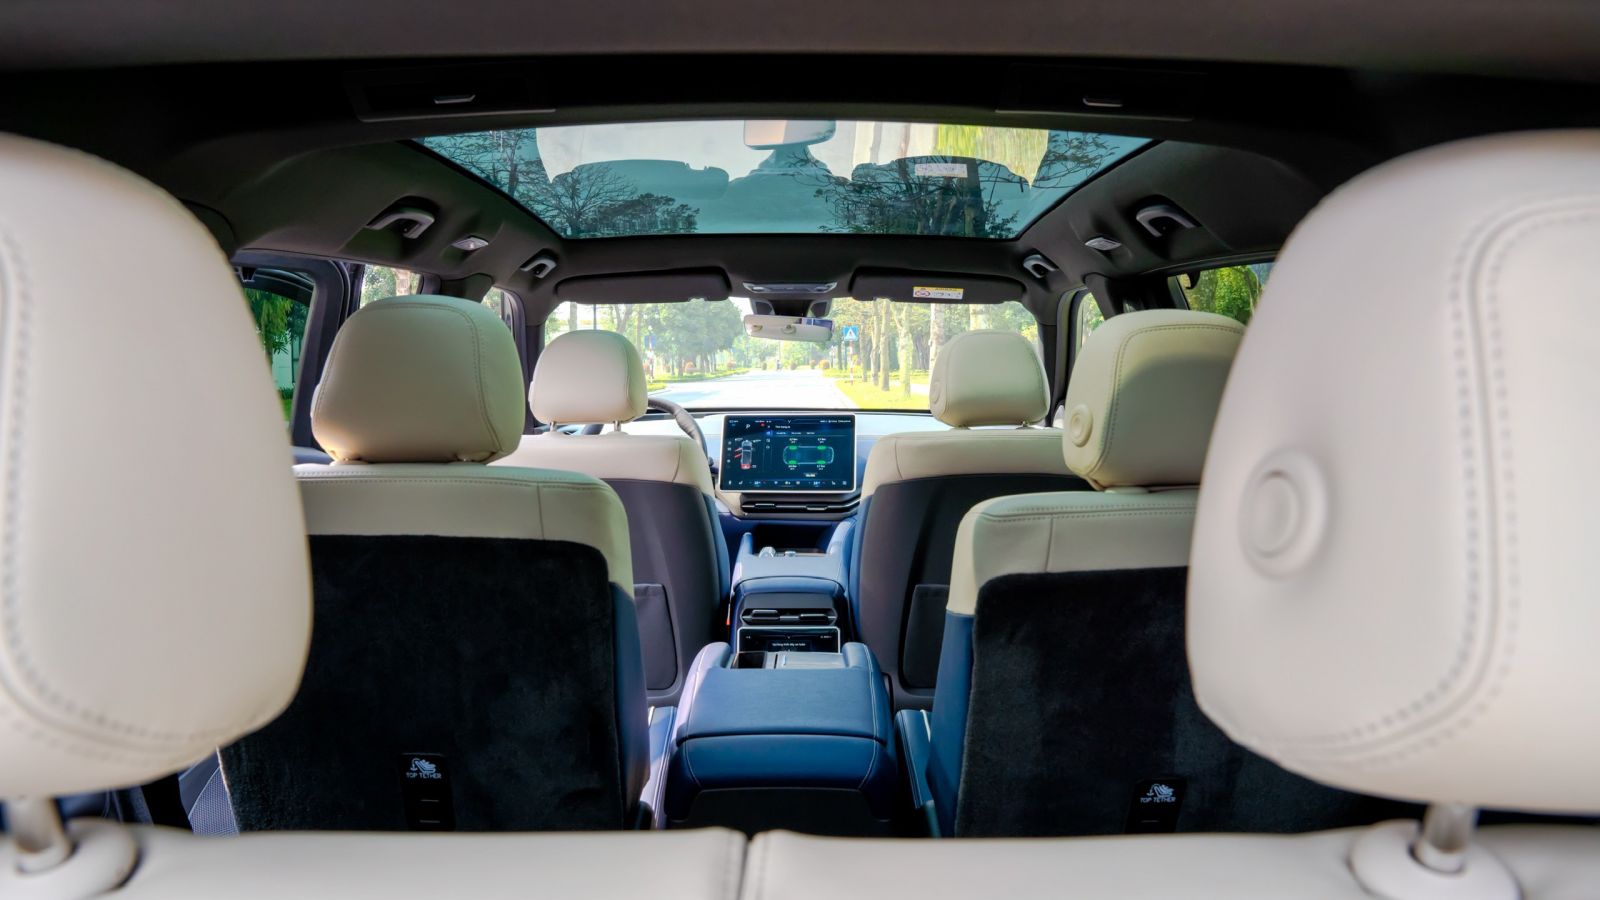 Cận cảnh hình ảnh nội, ngoại thất của xe VF 9 - mẫu ô tô điện cao cấp nhất của VinFast tính đến thời điểm hiện tại.